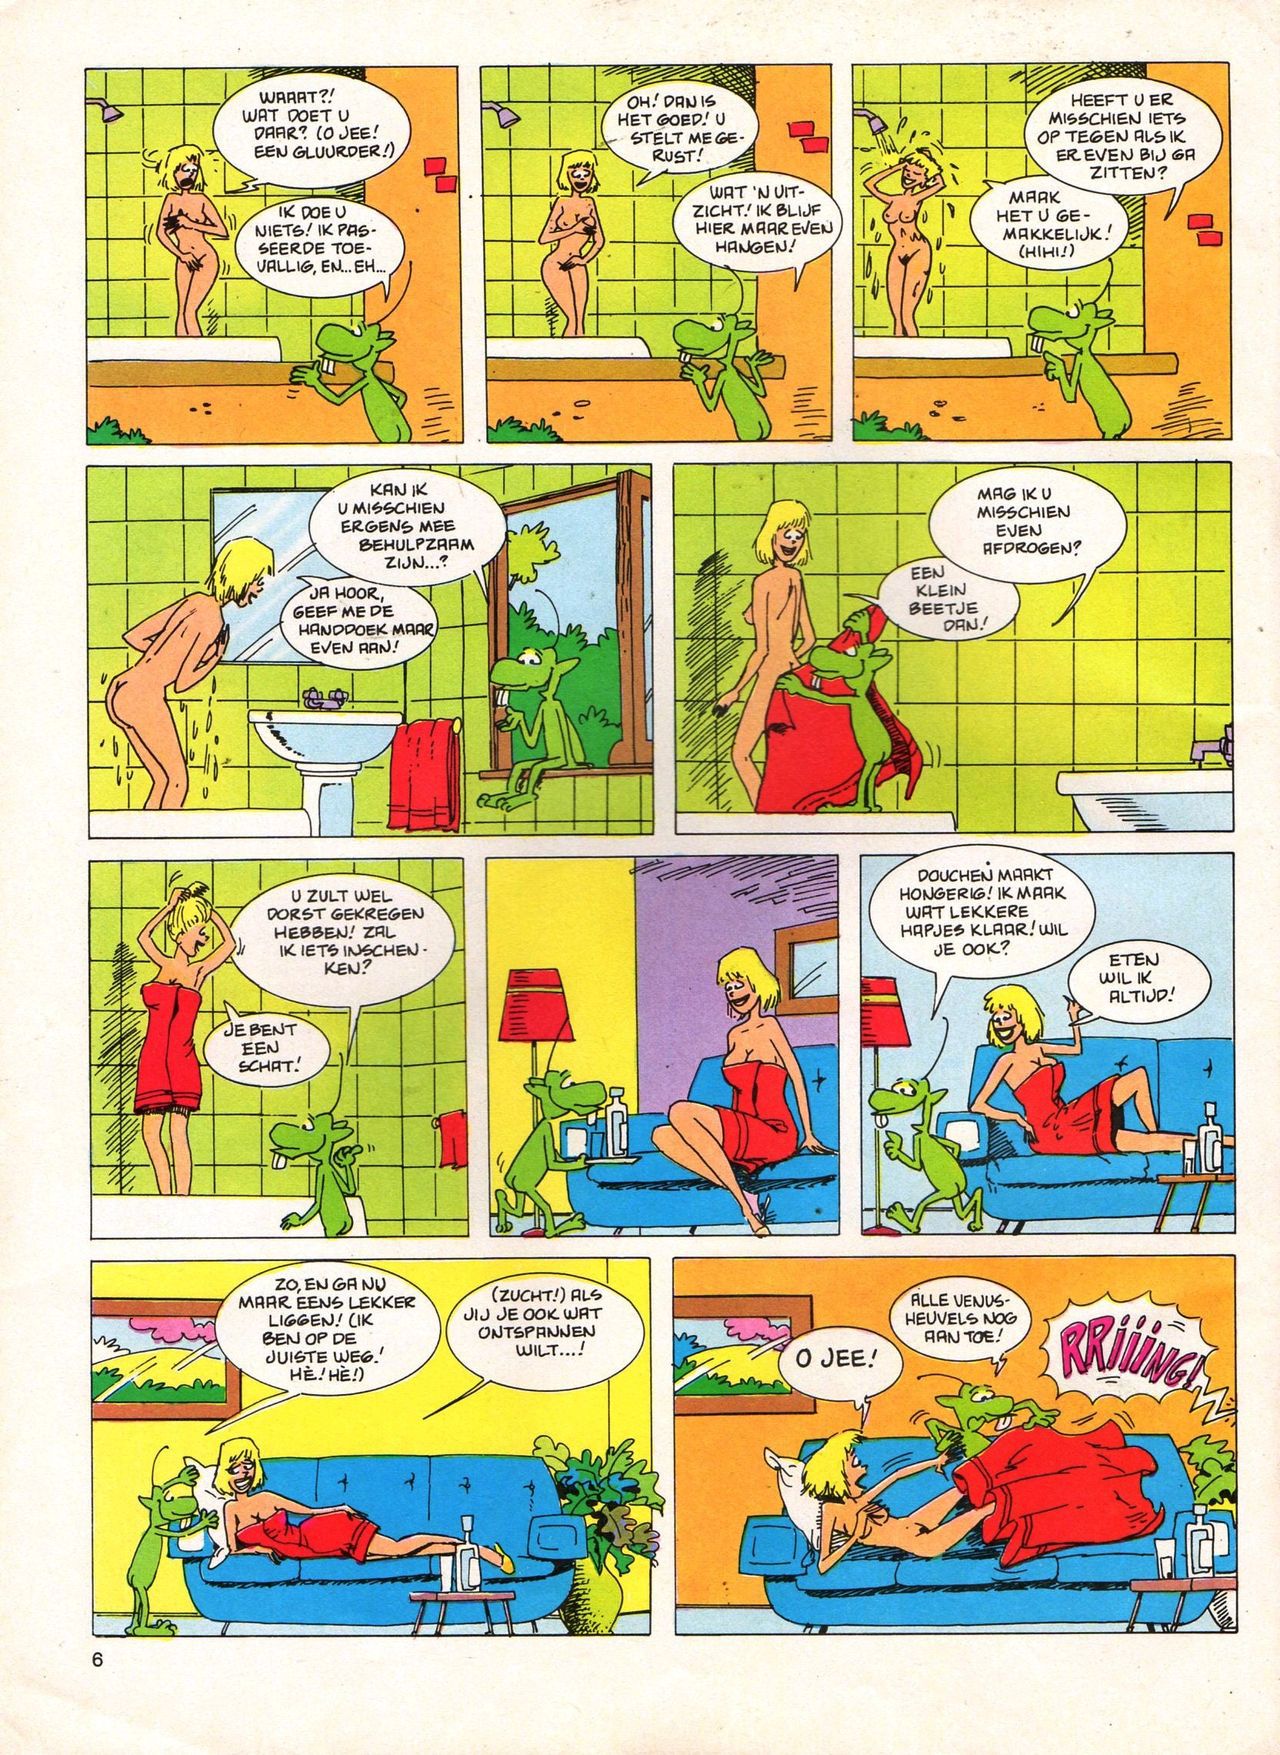 Het Is Groen En Het.. - 04 - Mag Ik Die Ballen.. OH, PARDON! (Dutch) Een oude humoristische serie van Pat Mallet 6